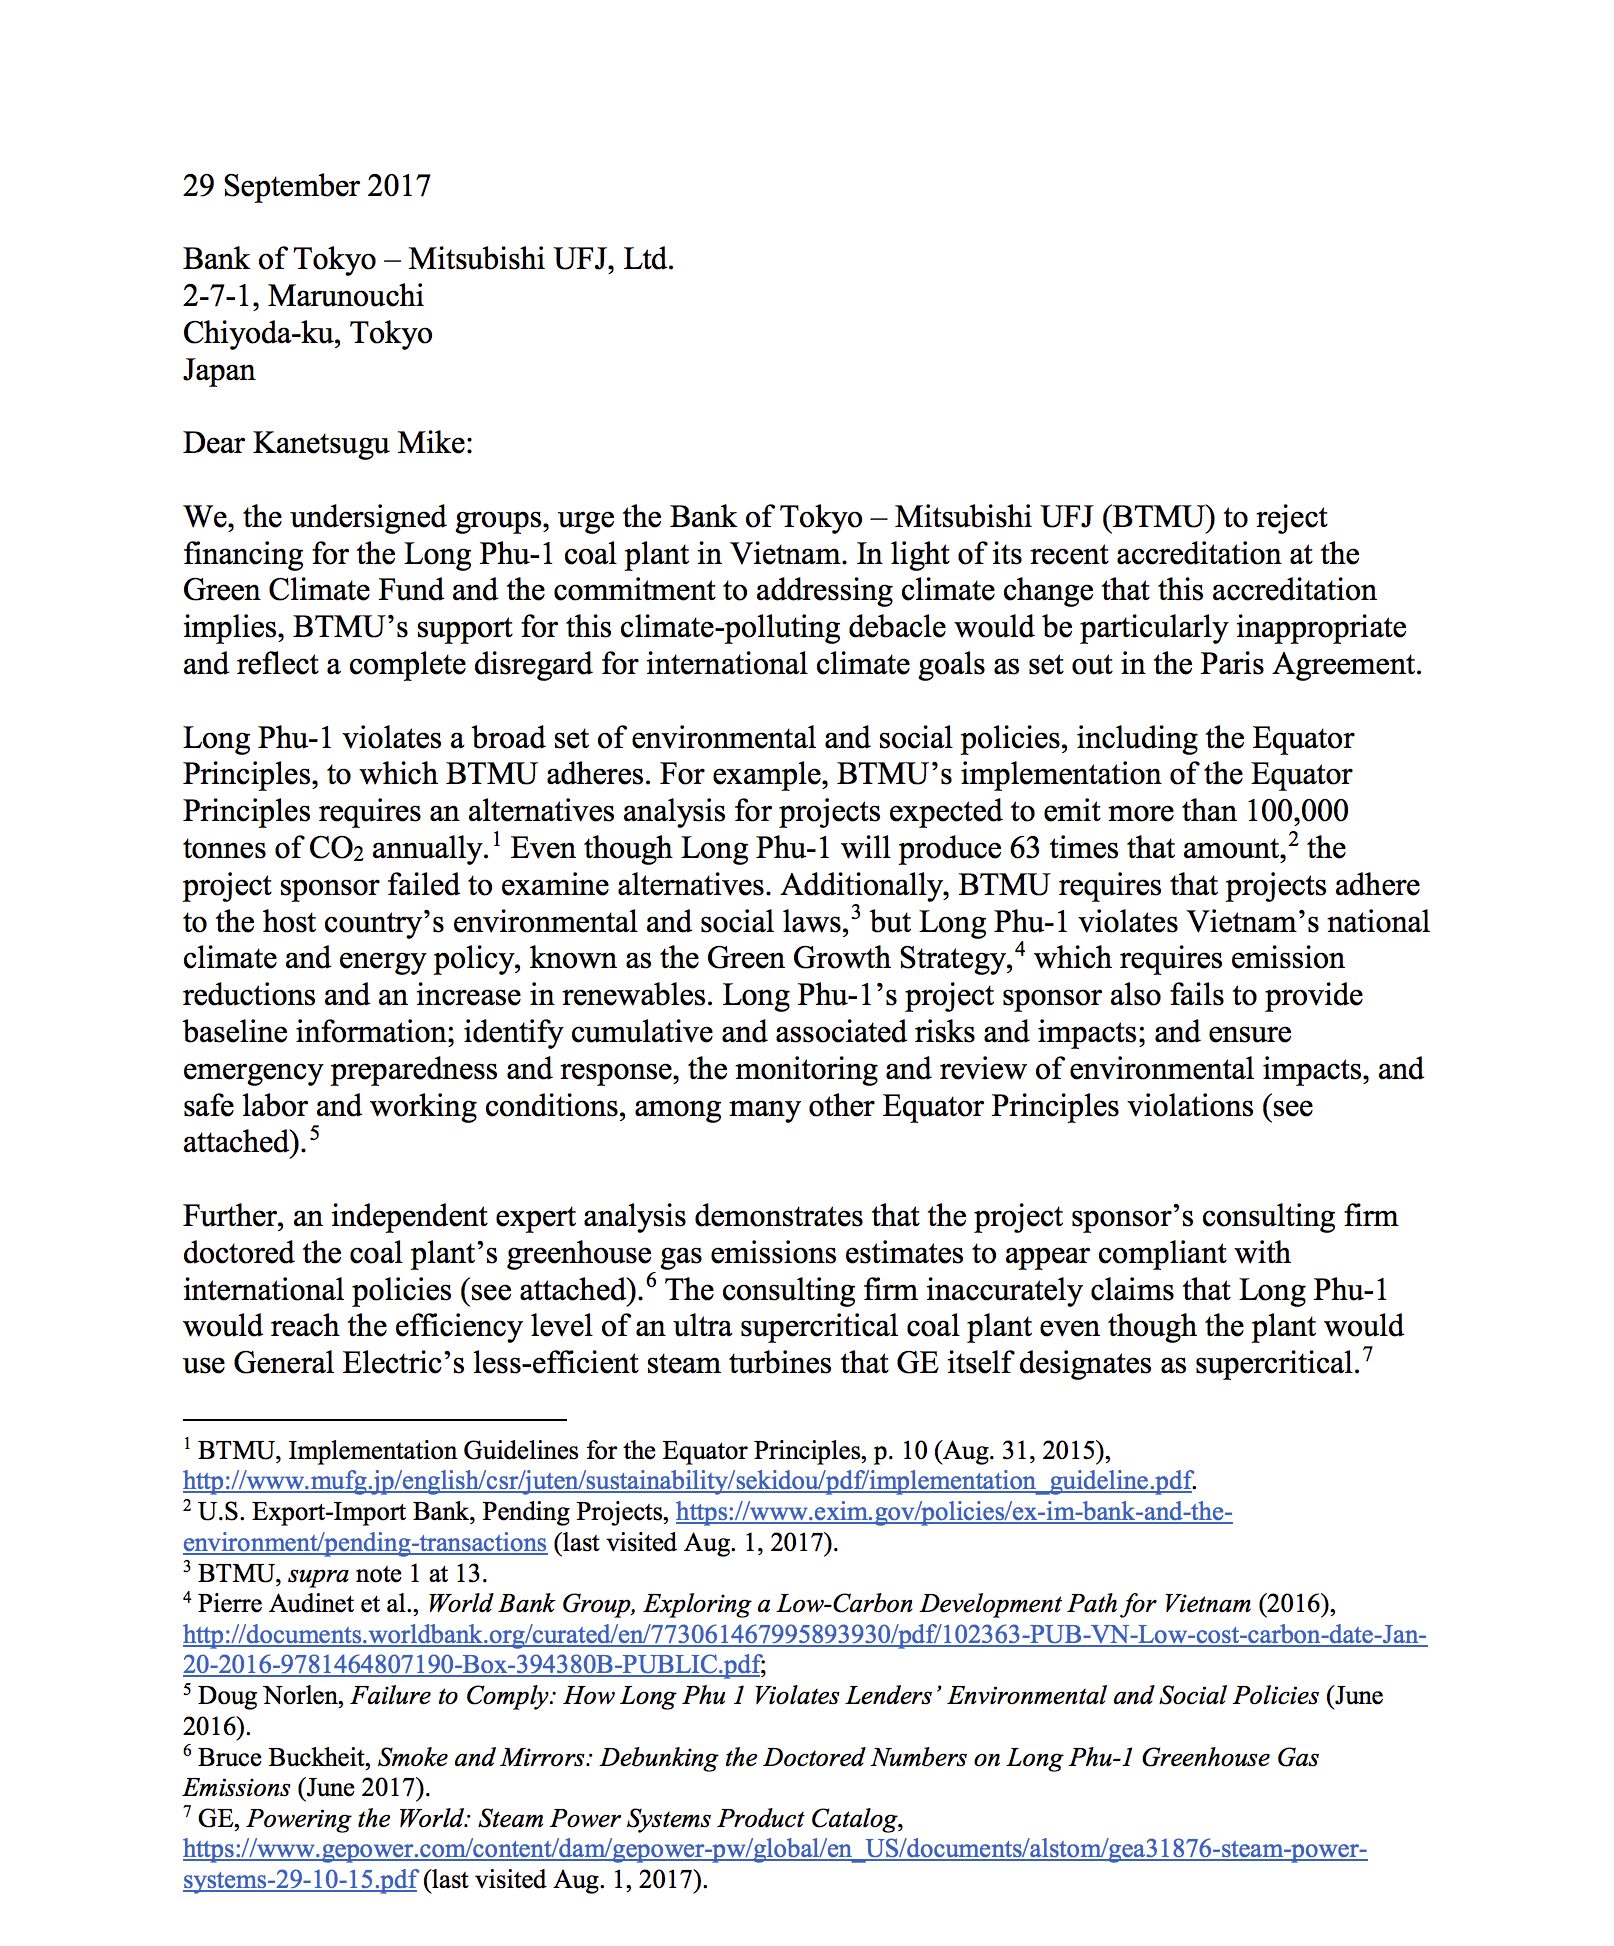 Letter to Bank of Tokyo Regarding Long Phu-1